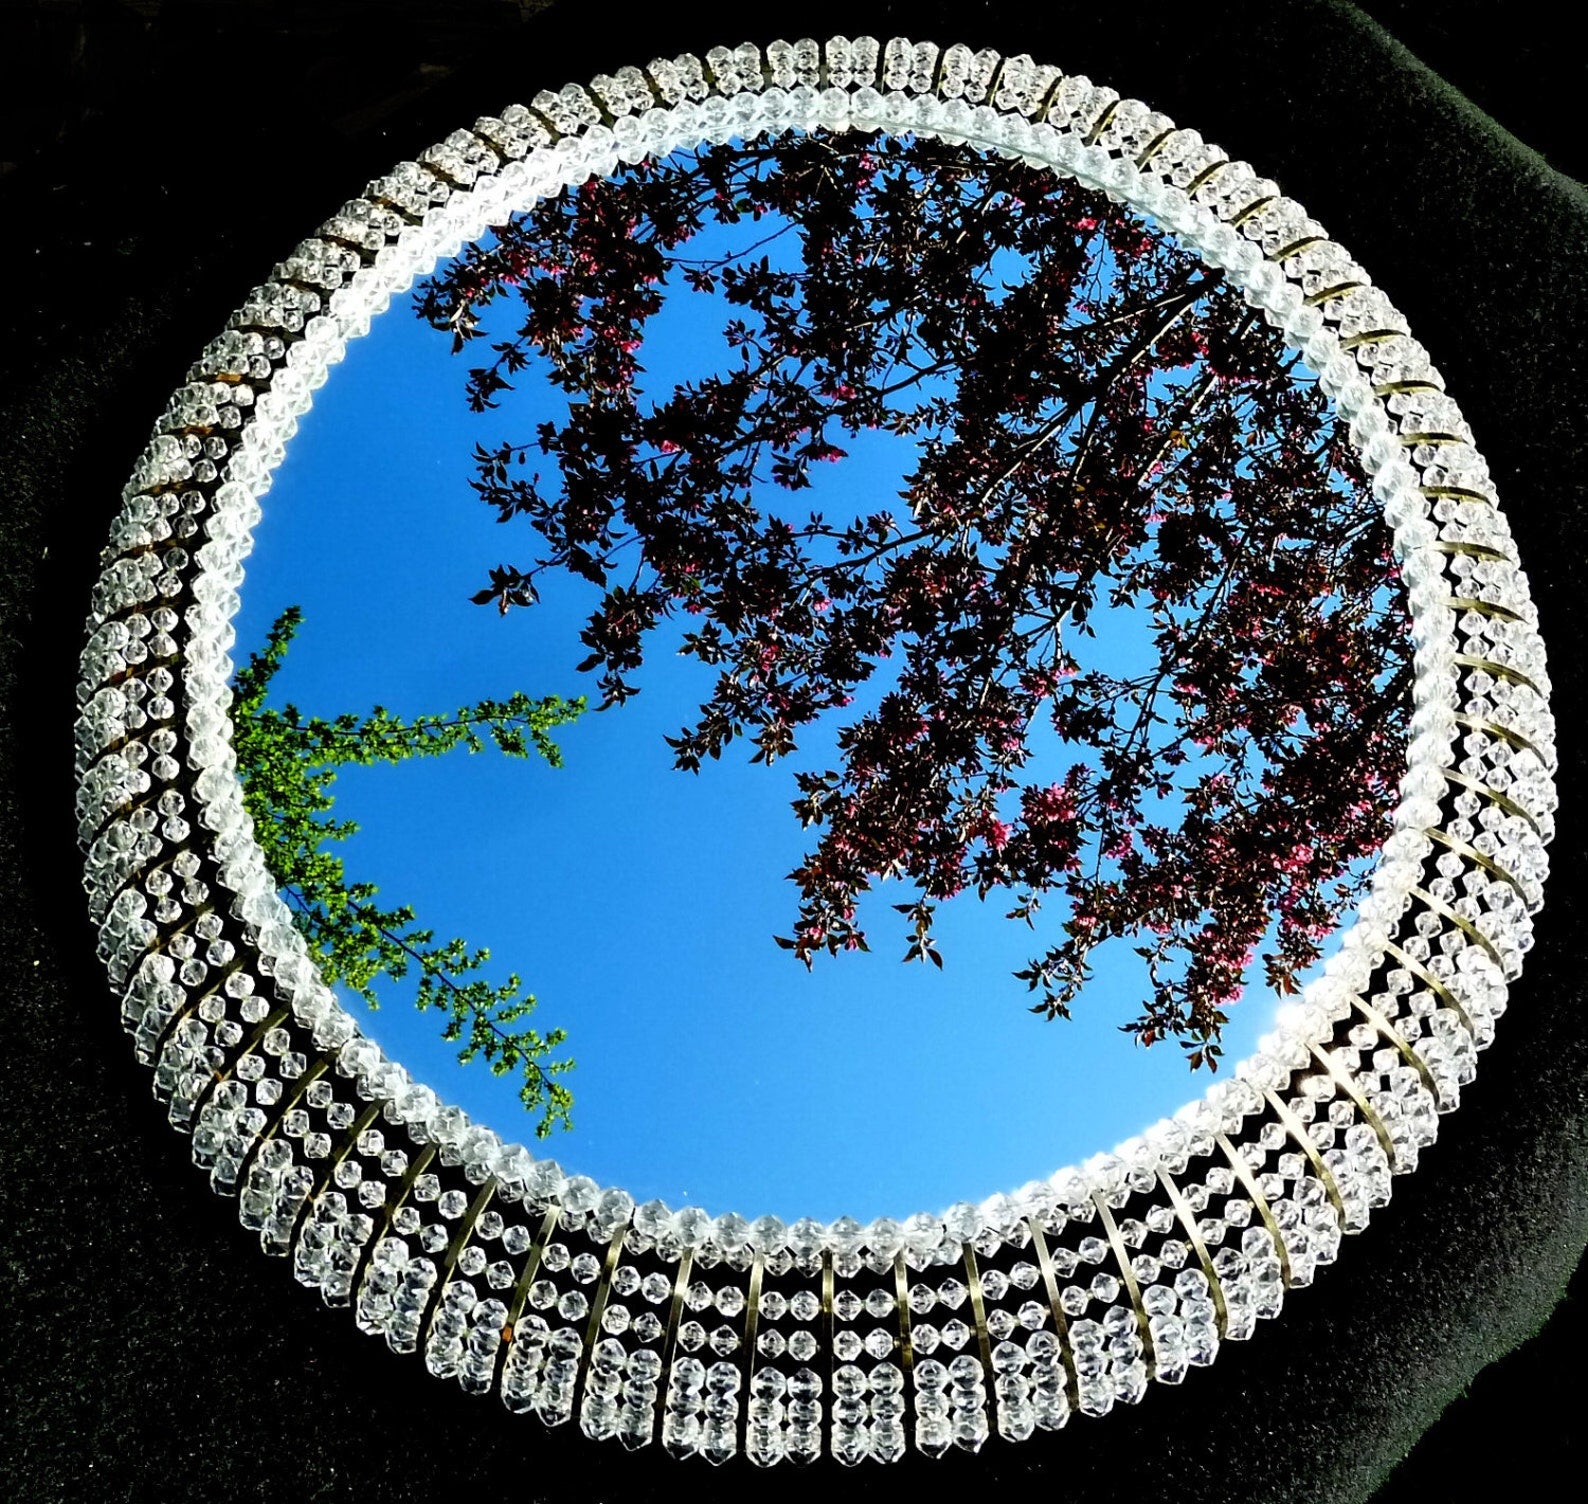 Rupert Nikoll Vienna grand miroir fleuri illuminé 1950's.

Miroir lumineux spectaculaire - 8 lumières (e14) perles acryliques & laiton, corps en aluminium 50s 60s.

Notre petite Collection autrichienne présente quelques pièces du fabricant